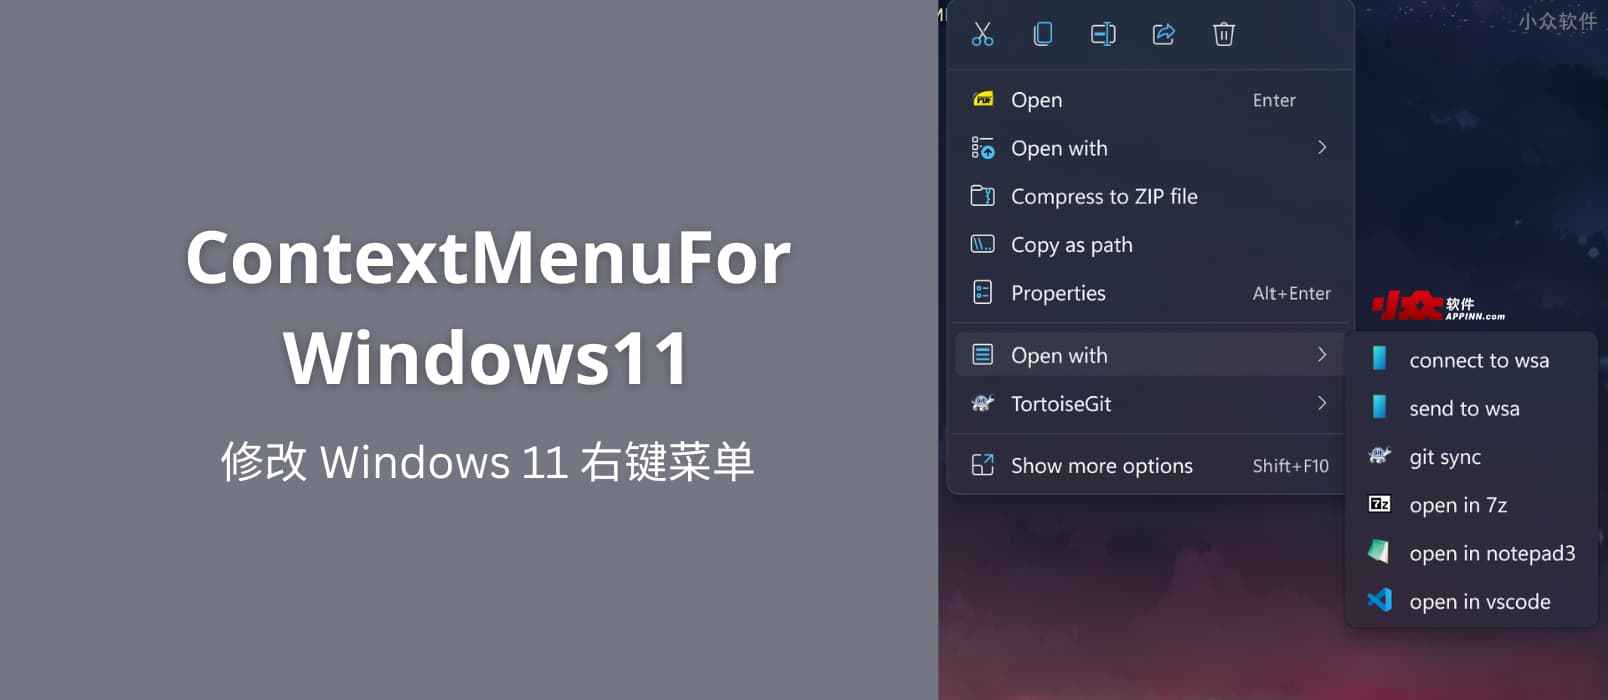 ContextMenuForWindows11 - 修改 Windows 11 右键菜单